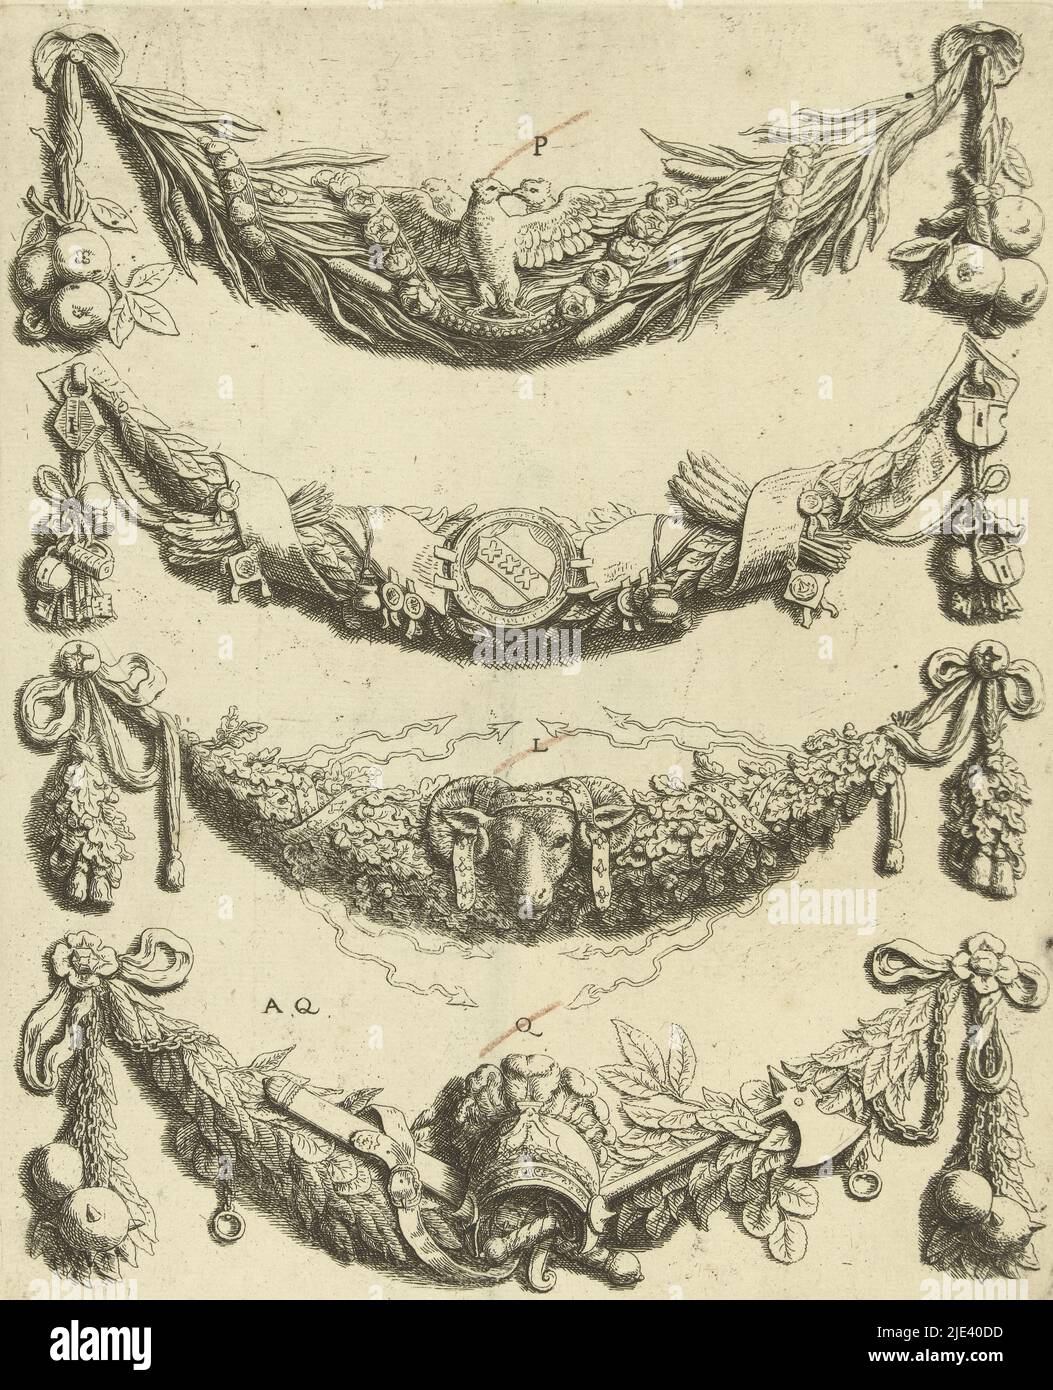 Quatre festoons, Hubert Quellinus, d'après Artus Quellinus (I), 1665 ans, festoons avec au milieu deux colombes, les armoiries d'Amsterdam, la tête d'un bélier et un casque avec des panaches. Feuille P [4]. Feuille de la deuxième édition., imprimeur: Hubert Quellinus, Artus Quellinus (I), (mentionné sur l'objet), éditeur: Frederik de Wit, Amsterdam, 1665, papier, gravure, h 247 mm × l 201 mm Banque D'Images